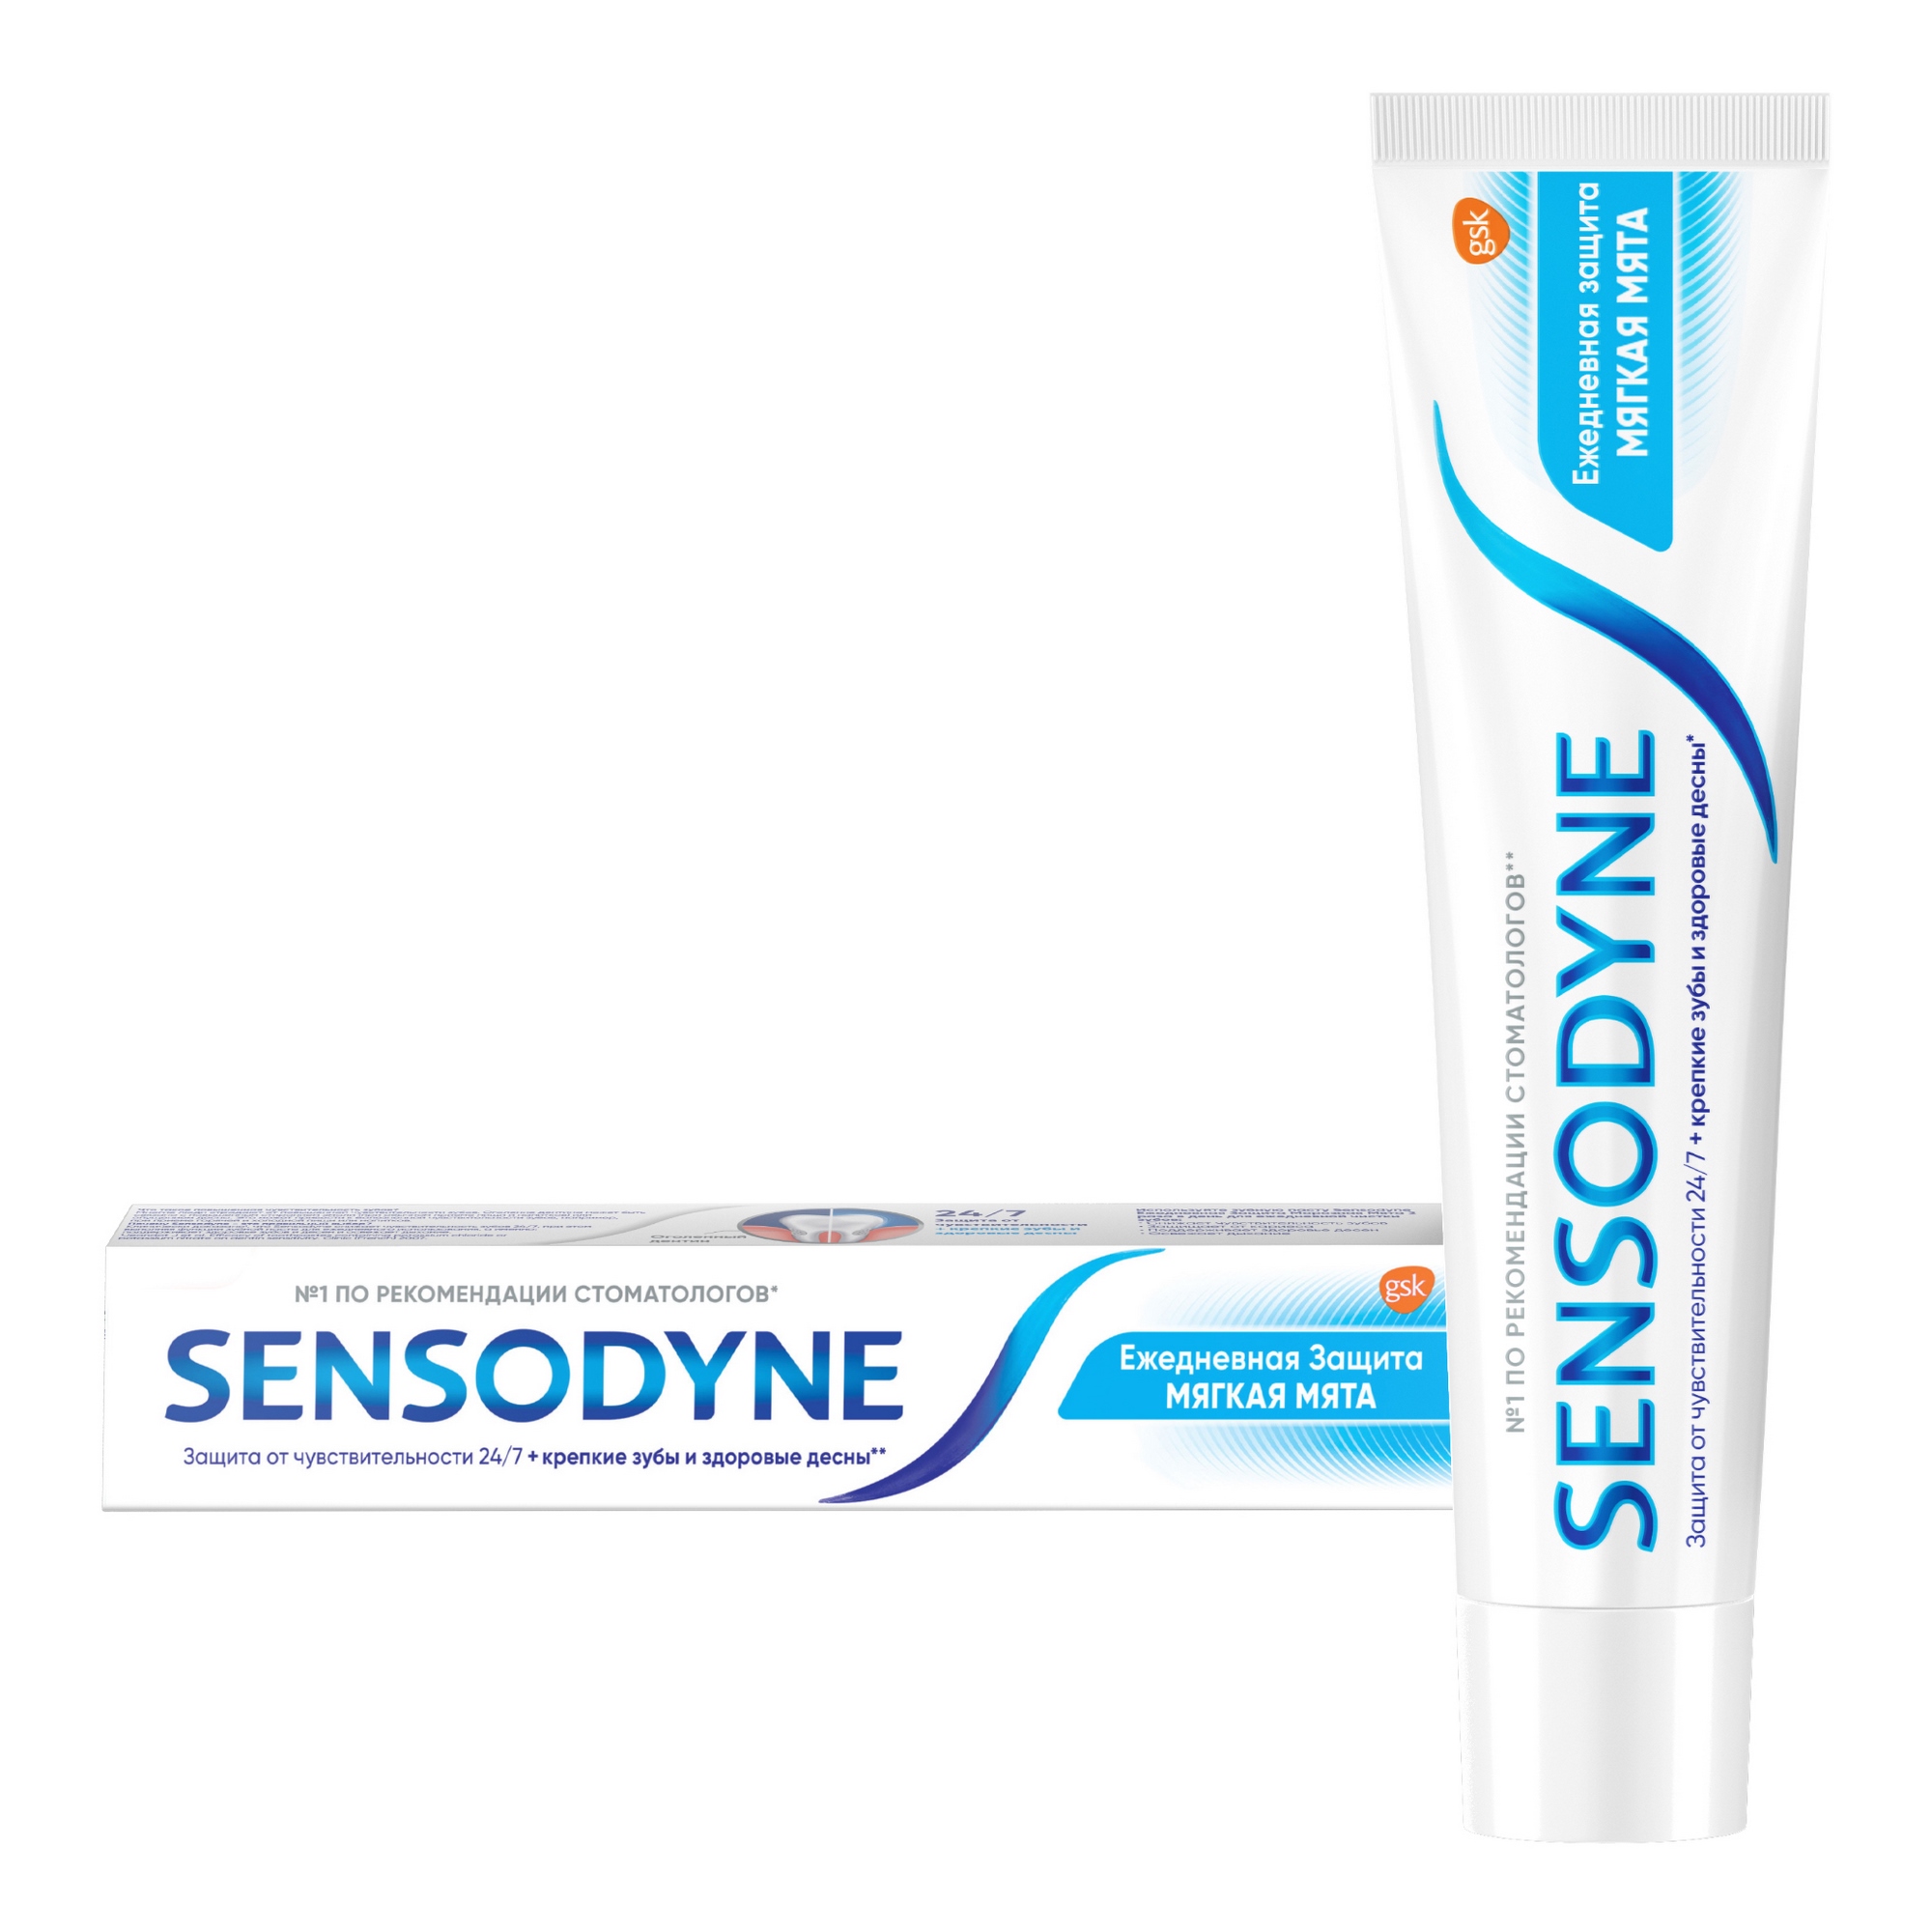 Зубная паста Sensodyne Ежедневная защита Мягкаямята 65 г зубная паста sensodyne ежедневная защита морозная мята 65 г